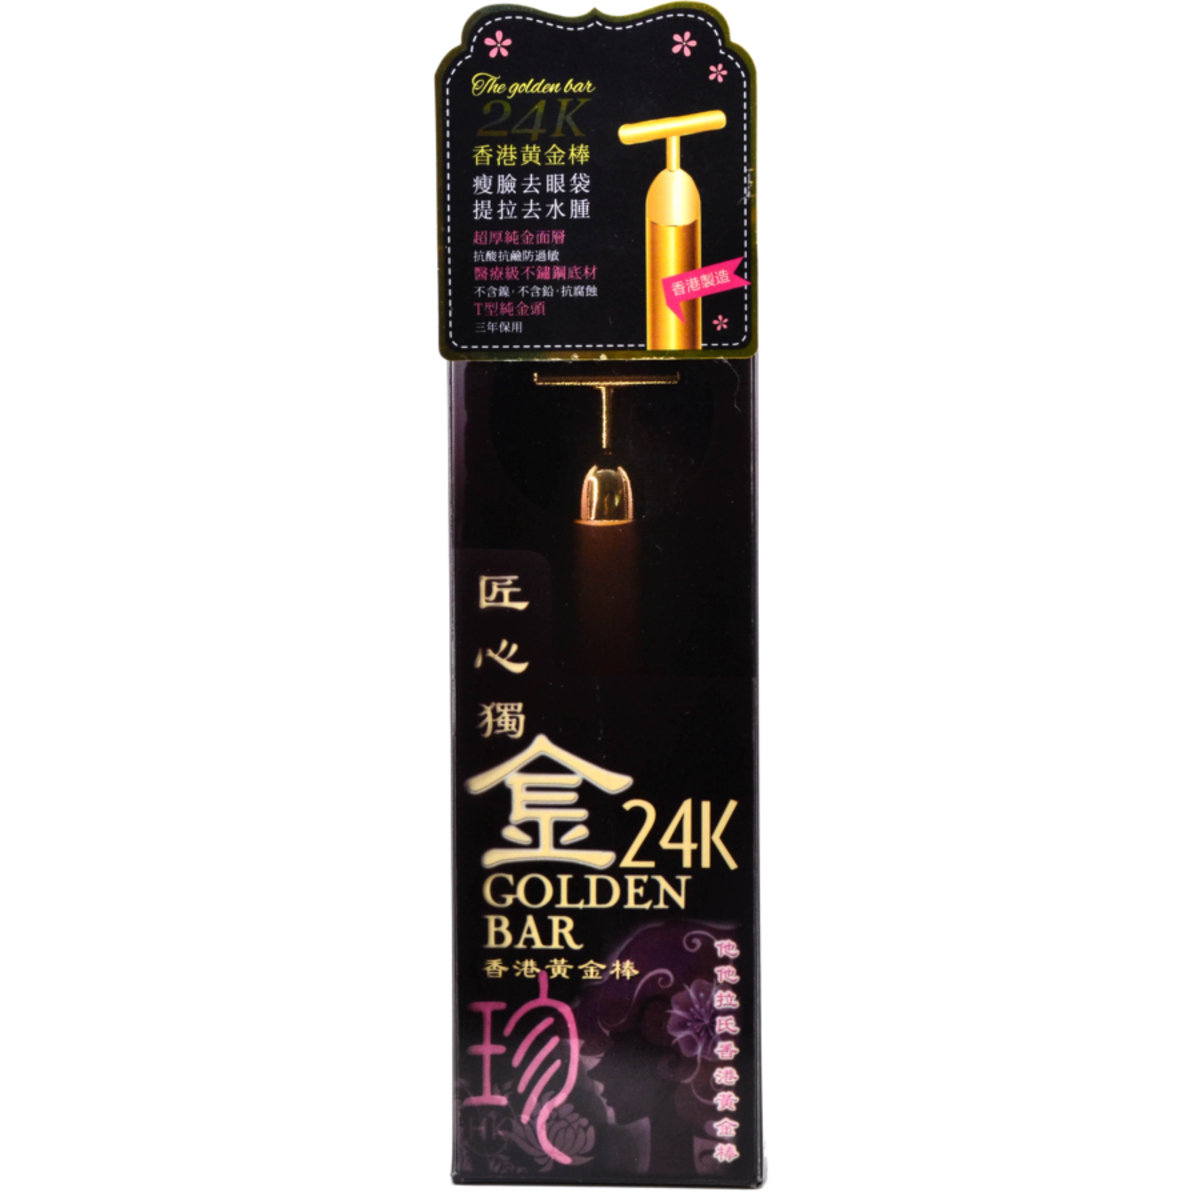 24K 香港黃金棒 (附絲絨保護袋) 黑色盒 - 首創無鉛無毒 - 17858